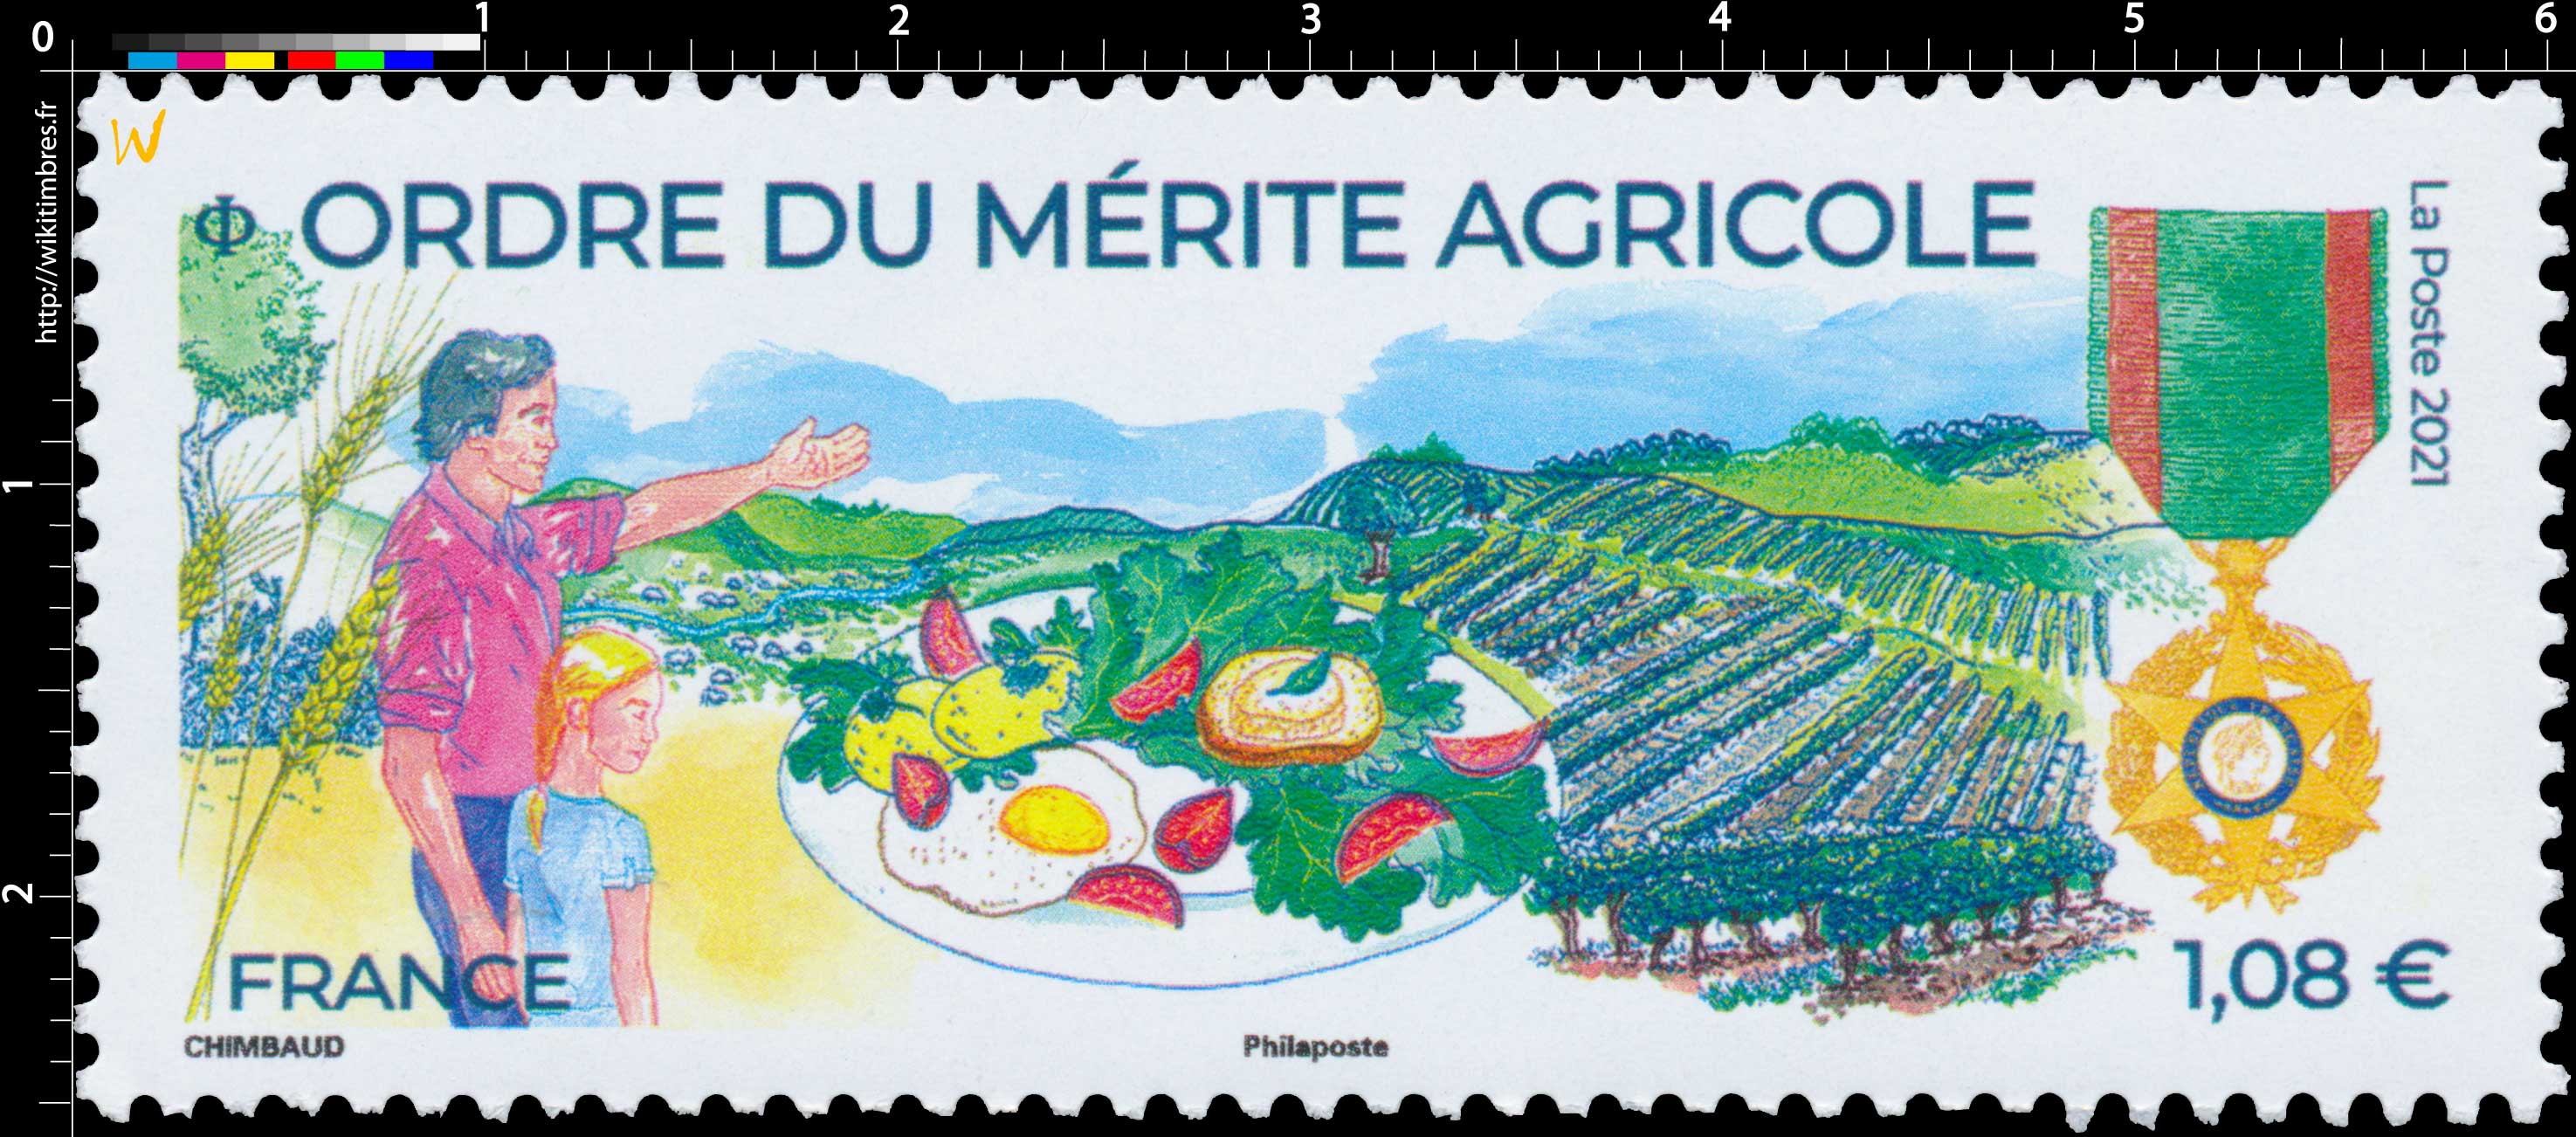 2021 Ordre du Mérite agricole